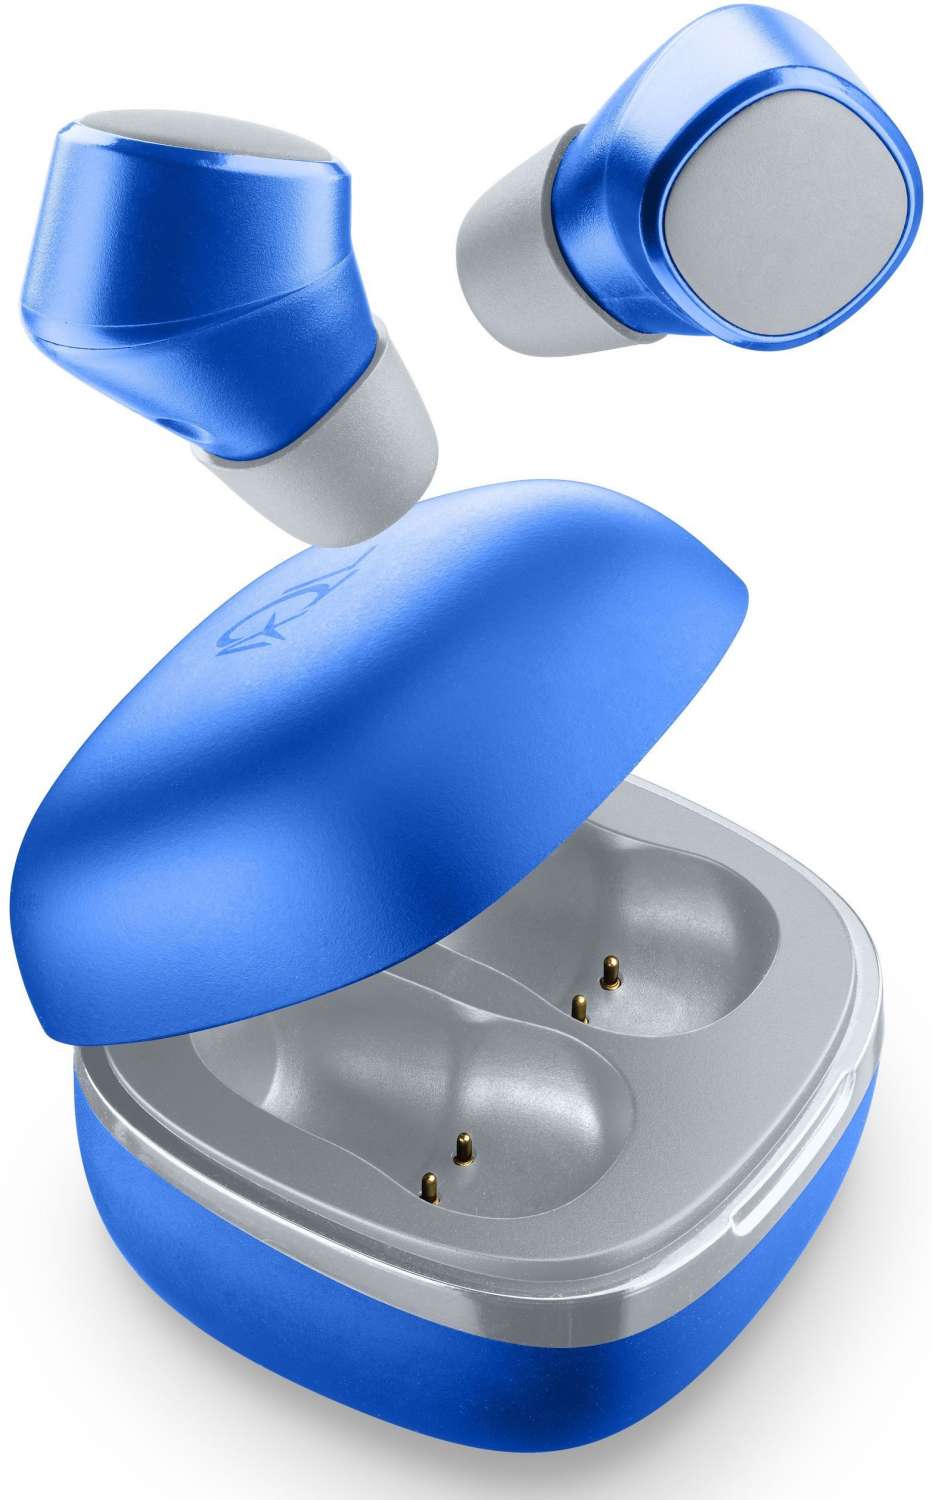 True Wireless sluchátka Cellularline Evade s dobíjecím pouzdrem, modrá